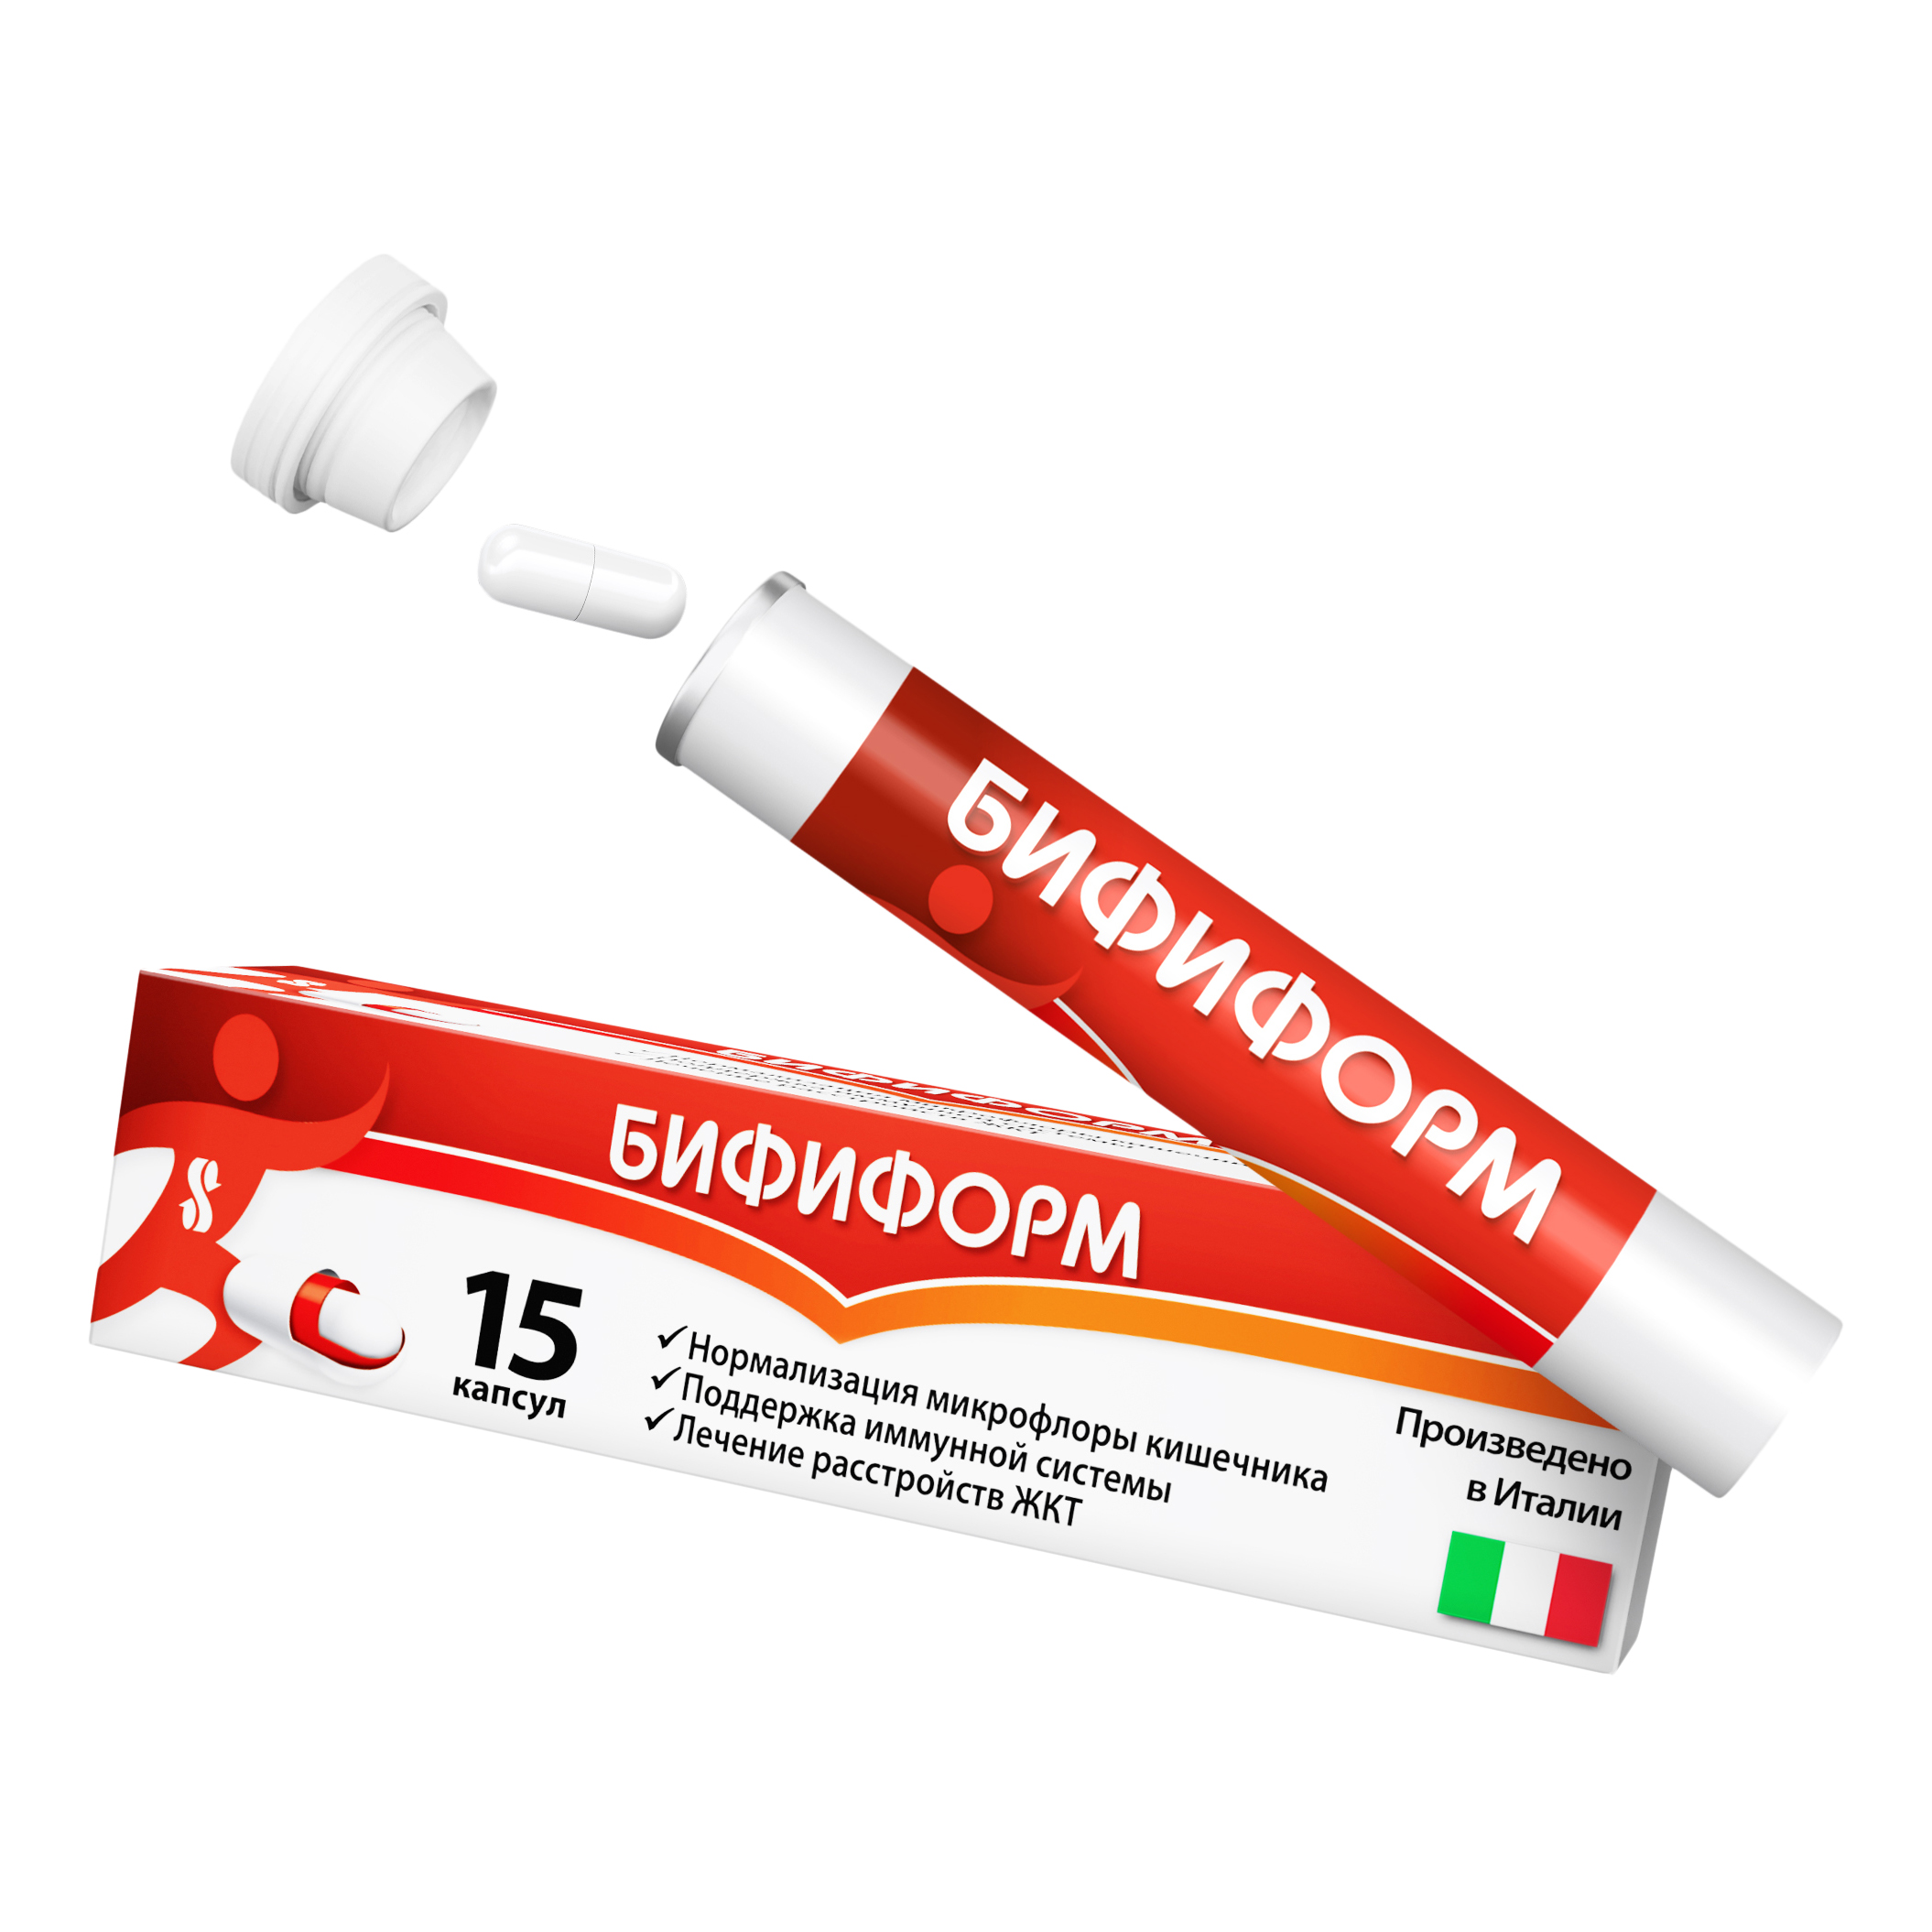 Бифиформ пробиотик для нормализации микрофлоры кишечника и поддержания иммунитета, 15 шт.